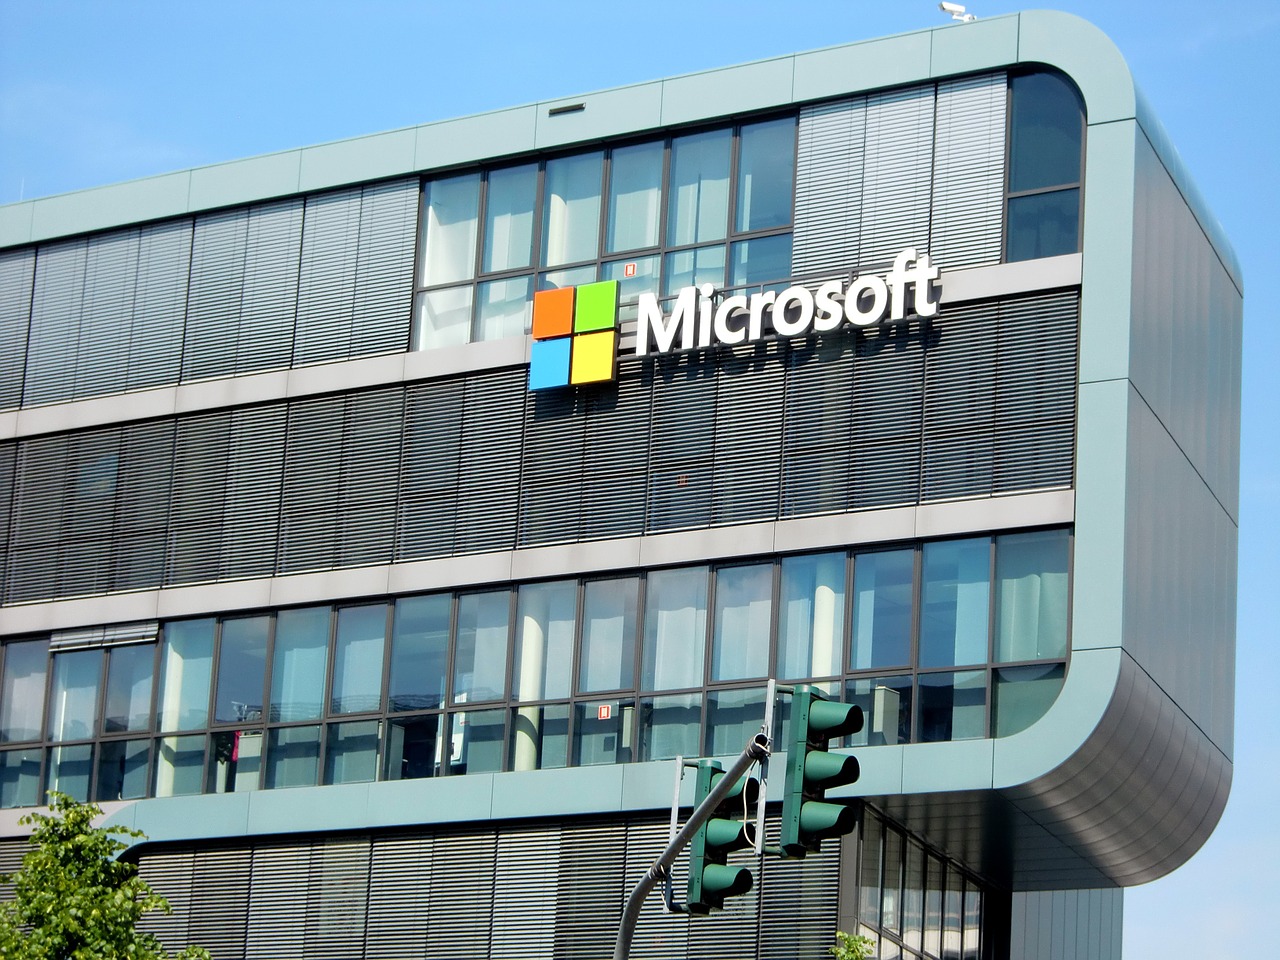 Microsoft : un centre de recherche en intelligence artificielle en France